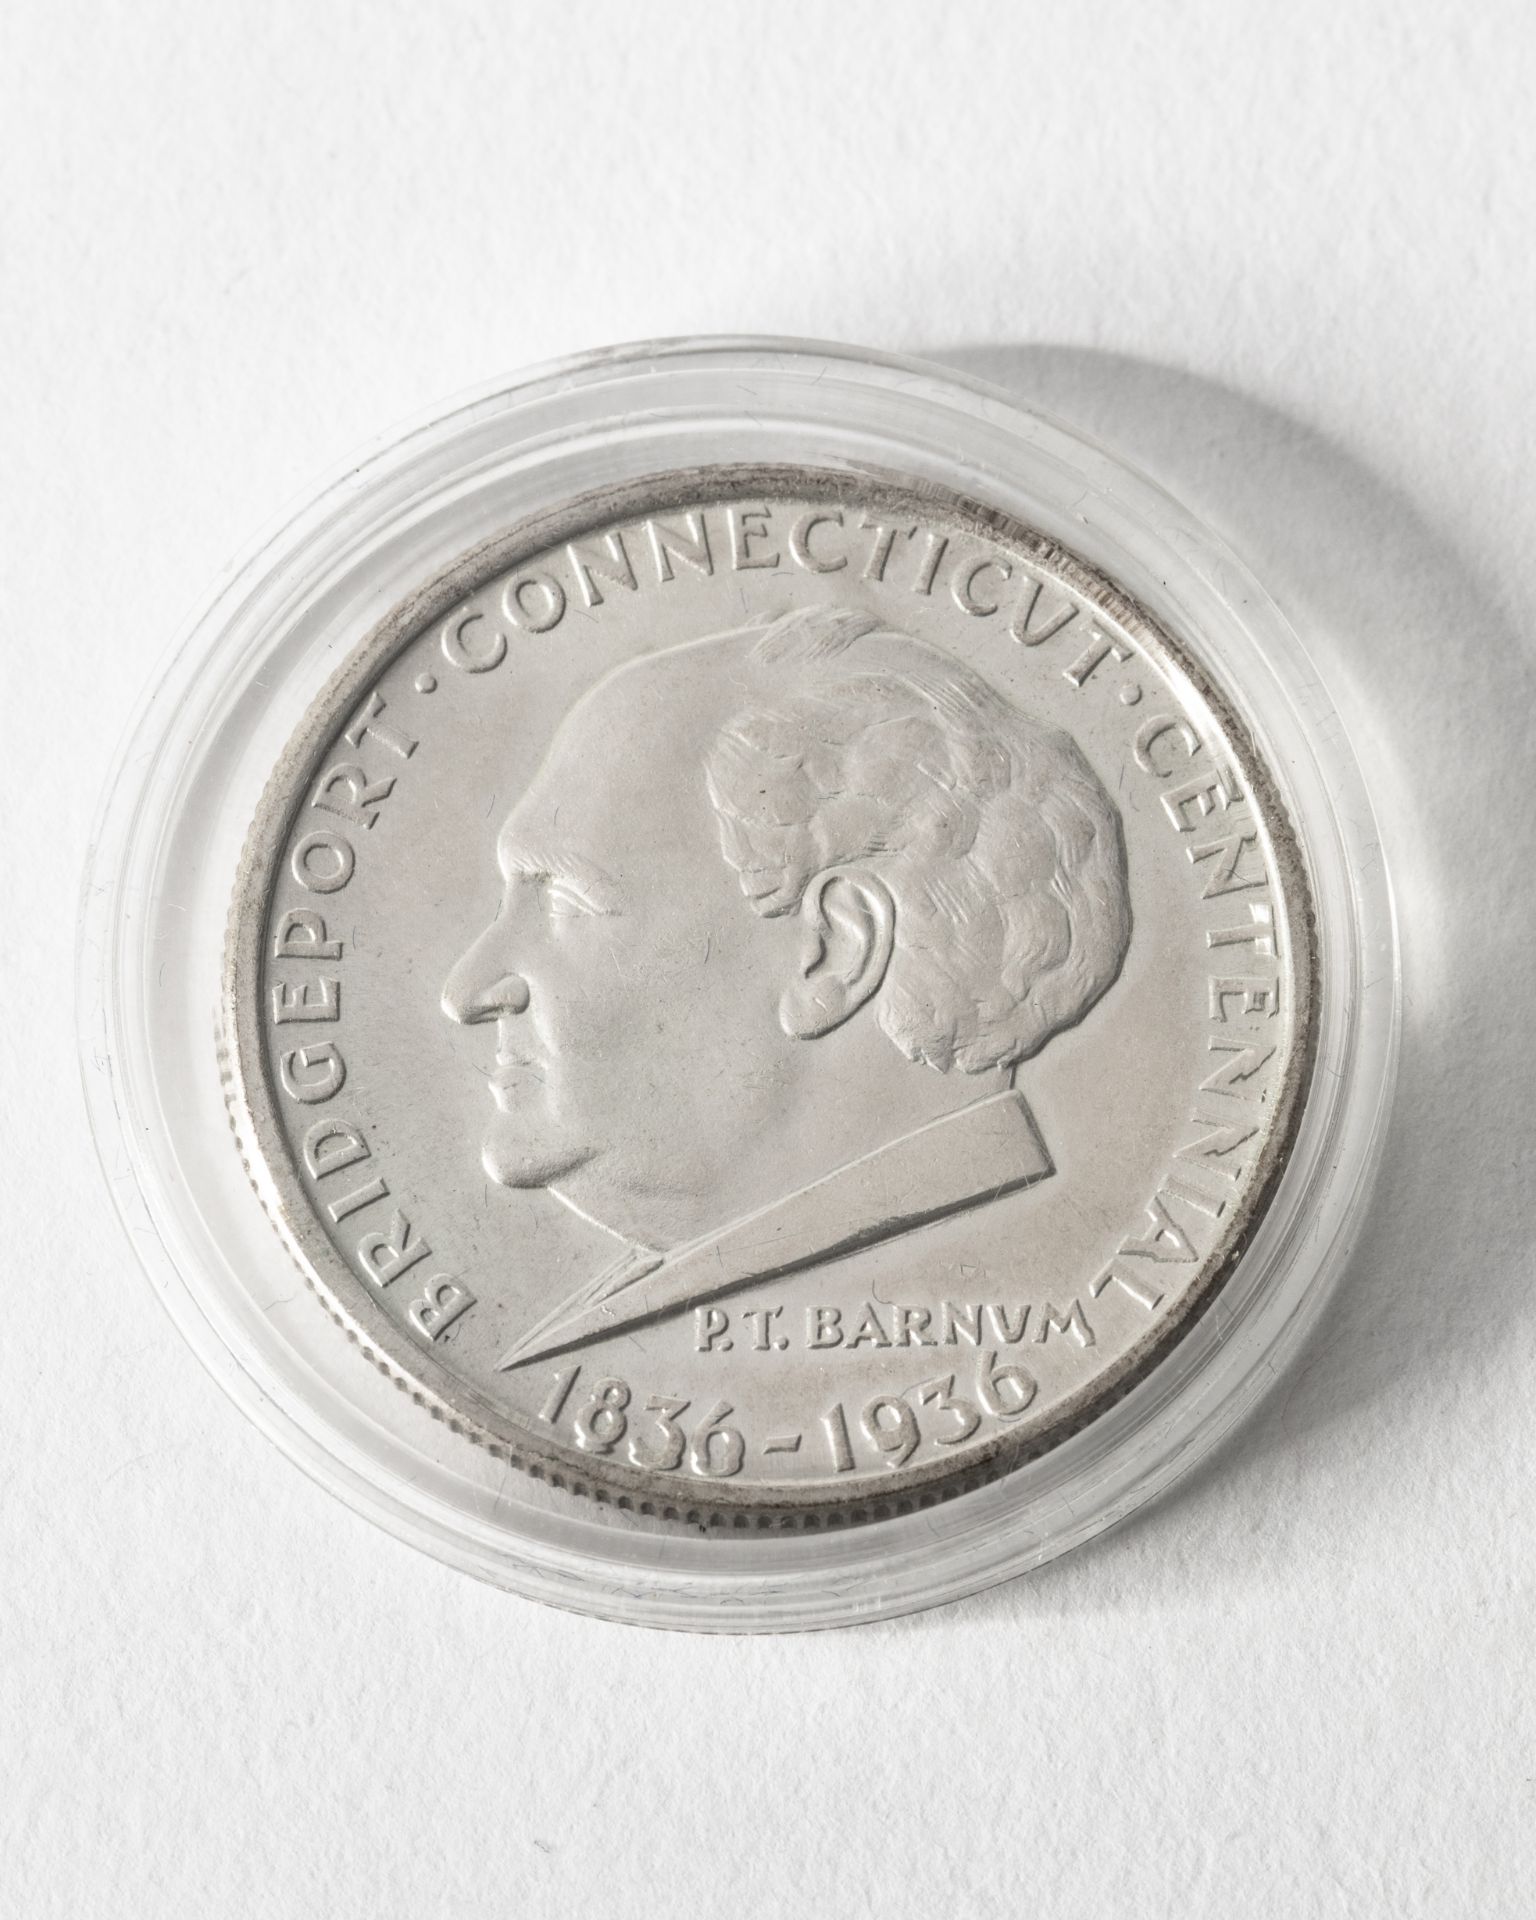 1/2 Dollar USA. 1936. Bridgeport Conneticut Centennial. 1836-1936. - Image 2 of 2